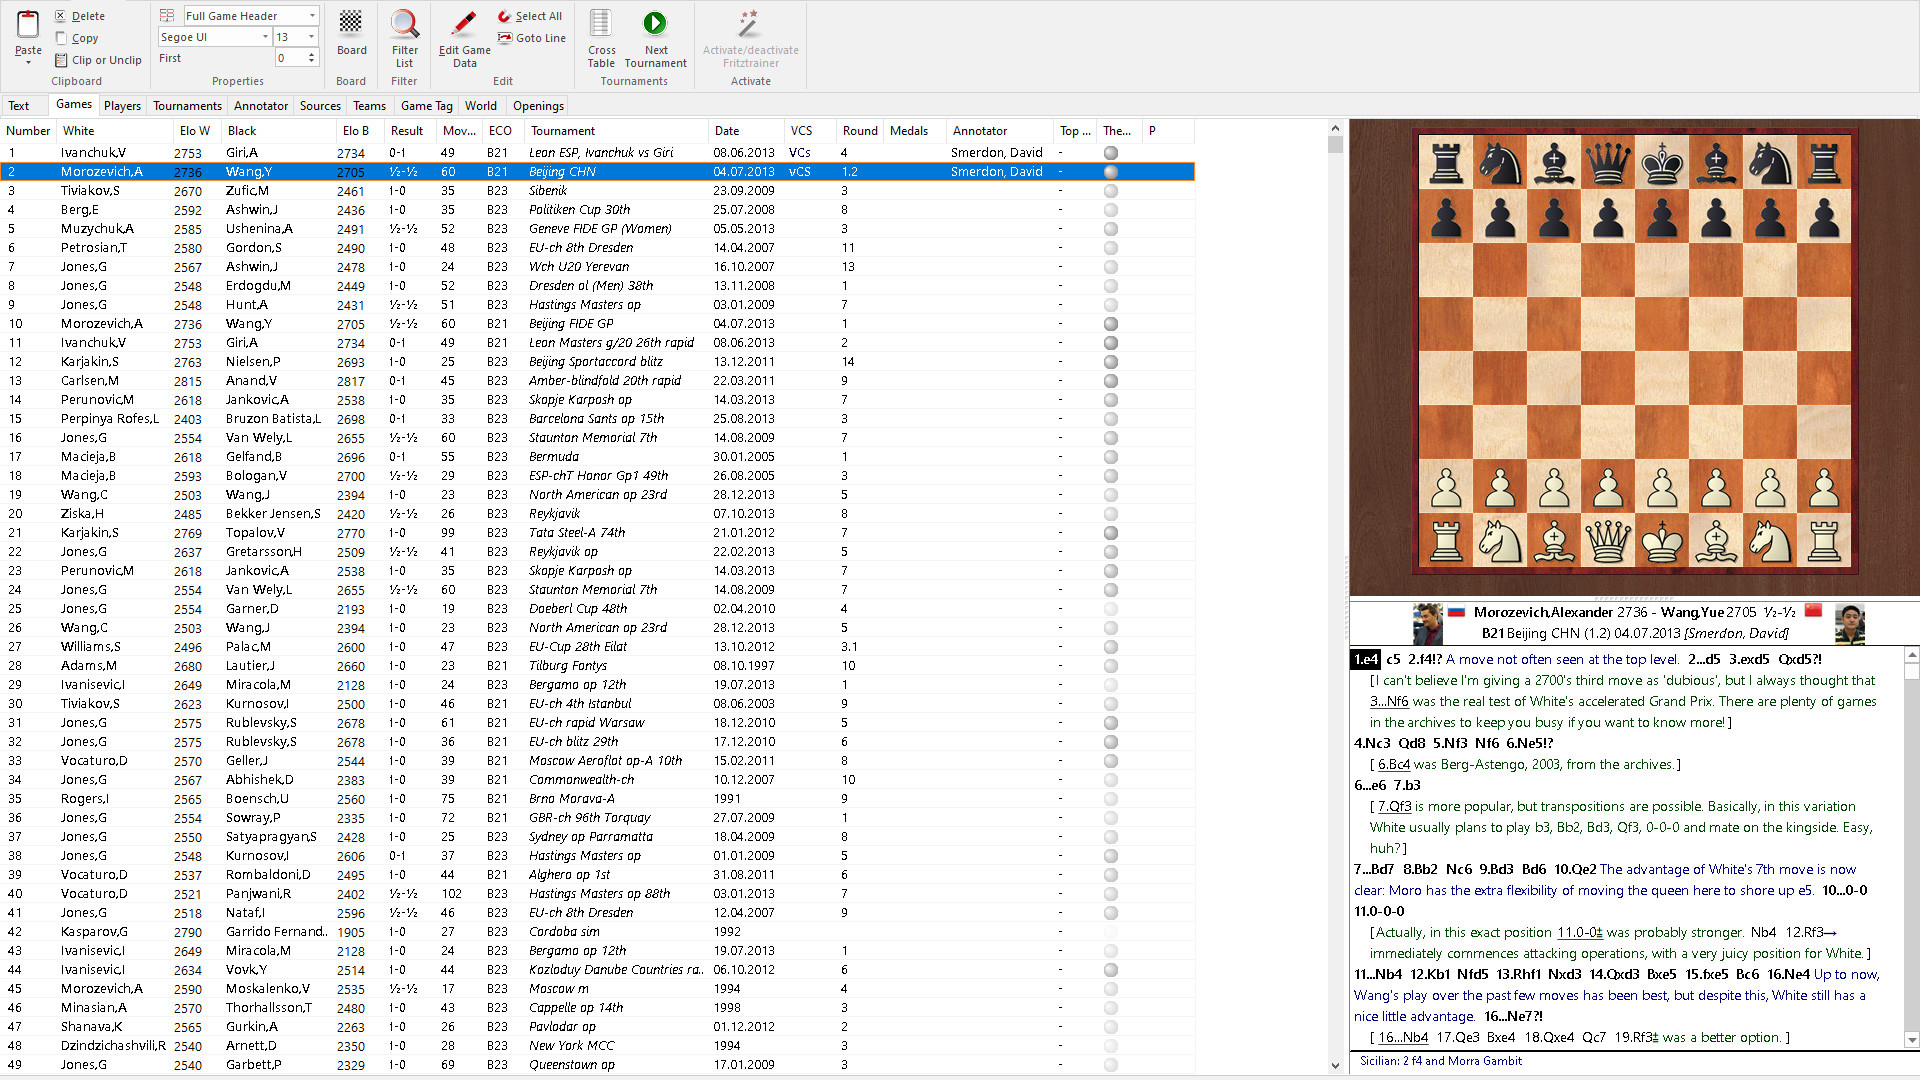 Kit Chessbase 17 + Power Fritz 18 E Mega Database 2023